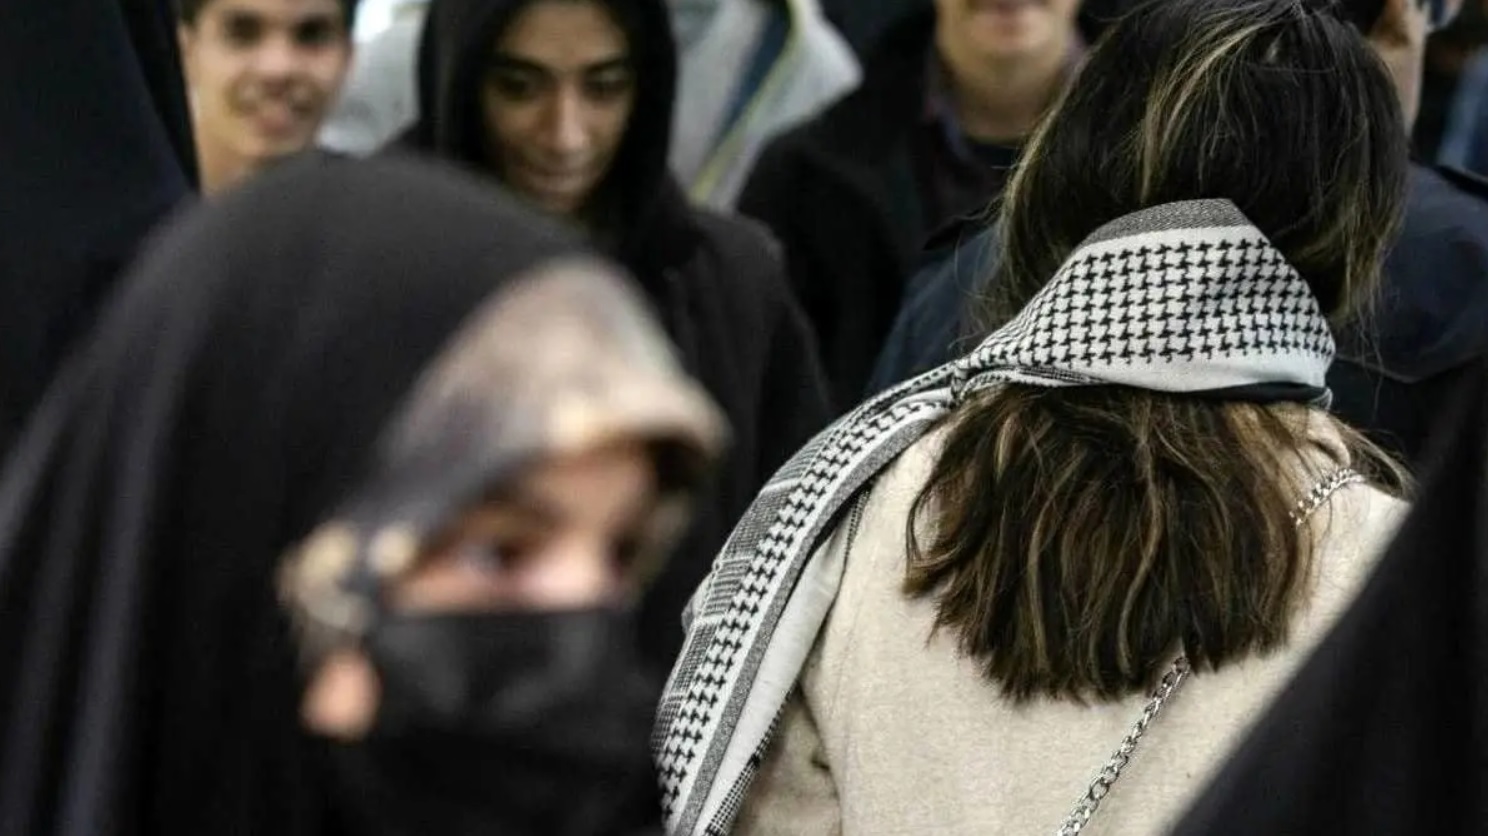 دولت بار مالی لایحه حجاب را قبول کرده است